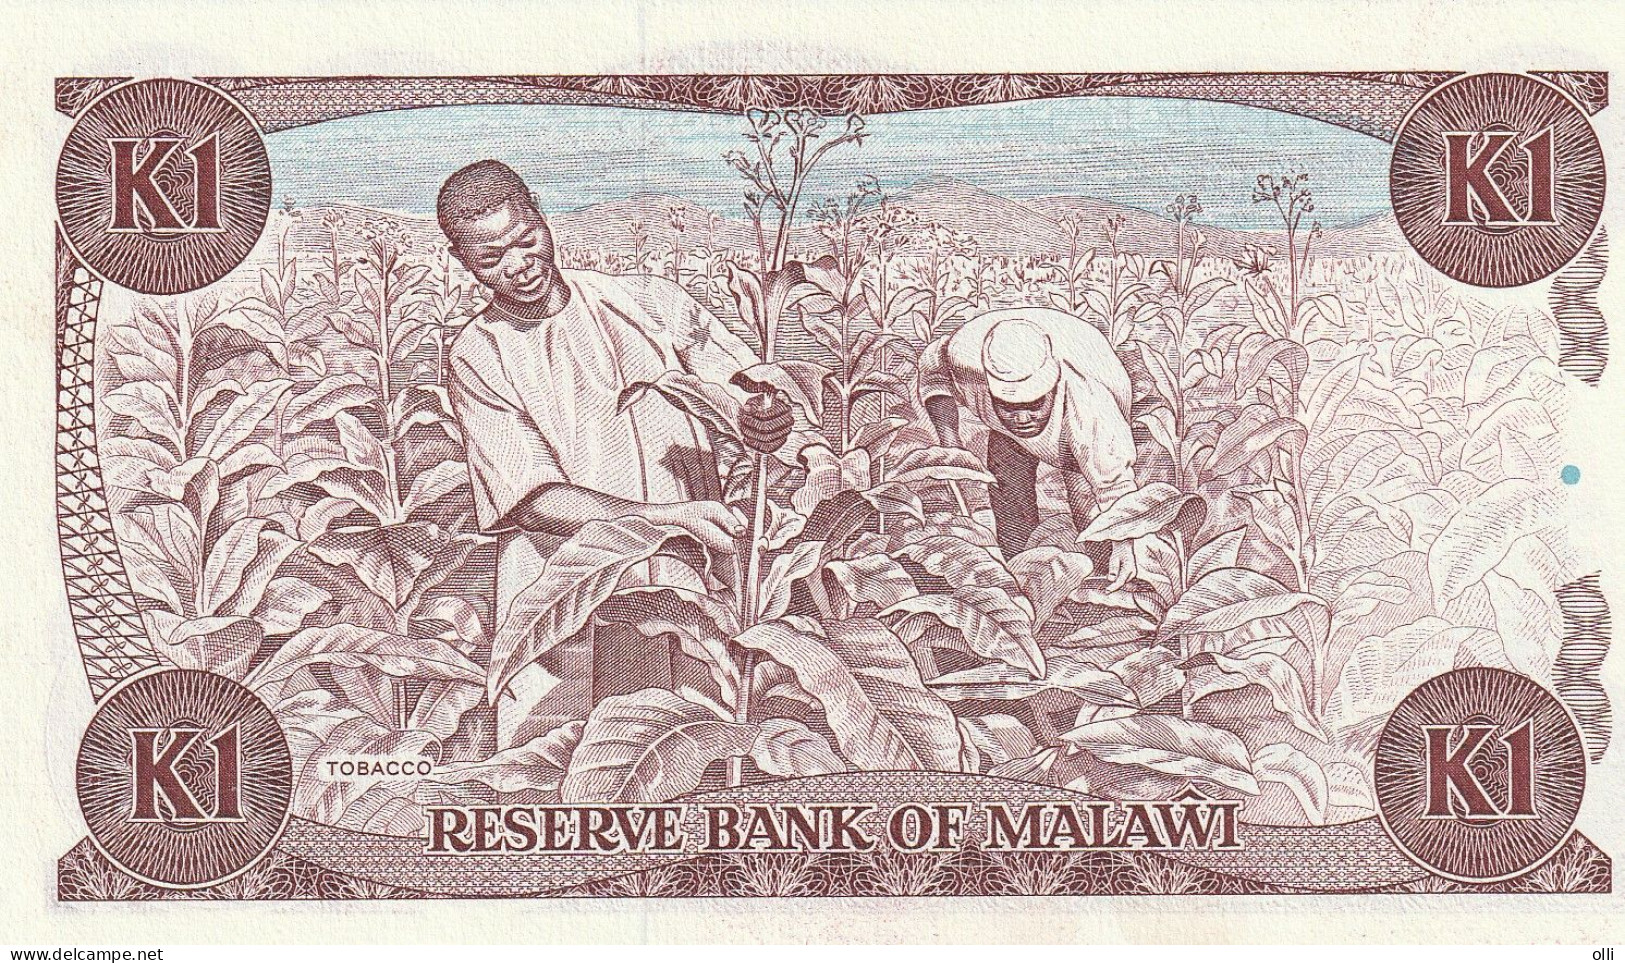 Malawi 1 Kwacha 1986 P-19a UNC - Malawi